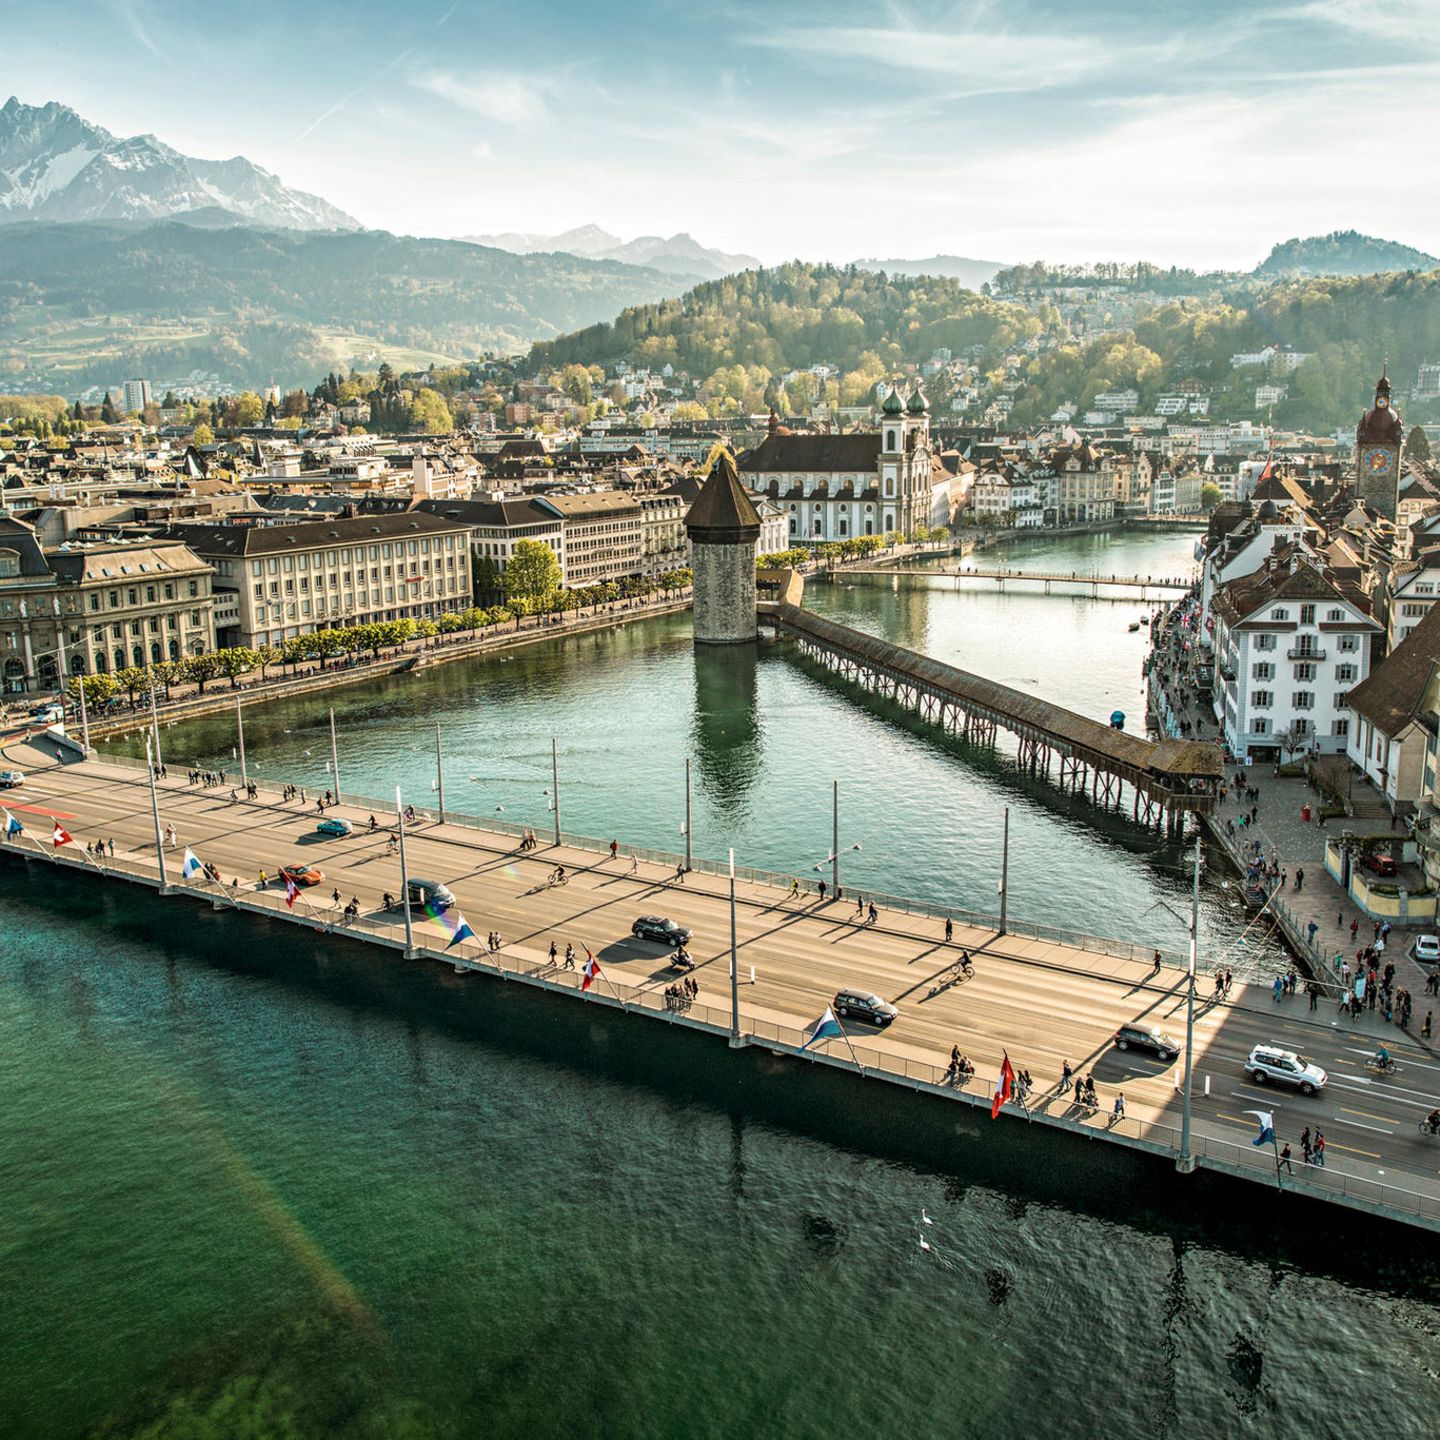 Luzern  An sich ist die ganze Gemeinde Luzern ein einziges optisches Spektakel. Wer aber eine ganz besonders schöne Sicht auf die Stadt in der Zentralschweiz gewinnen möchte, sollte sich zwei Ausflüge gönnen: eine Bahnfahrt auf den Pilatus und eine Schifffahrt über den Vierwaldstättersee.